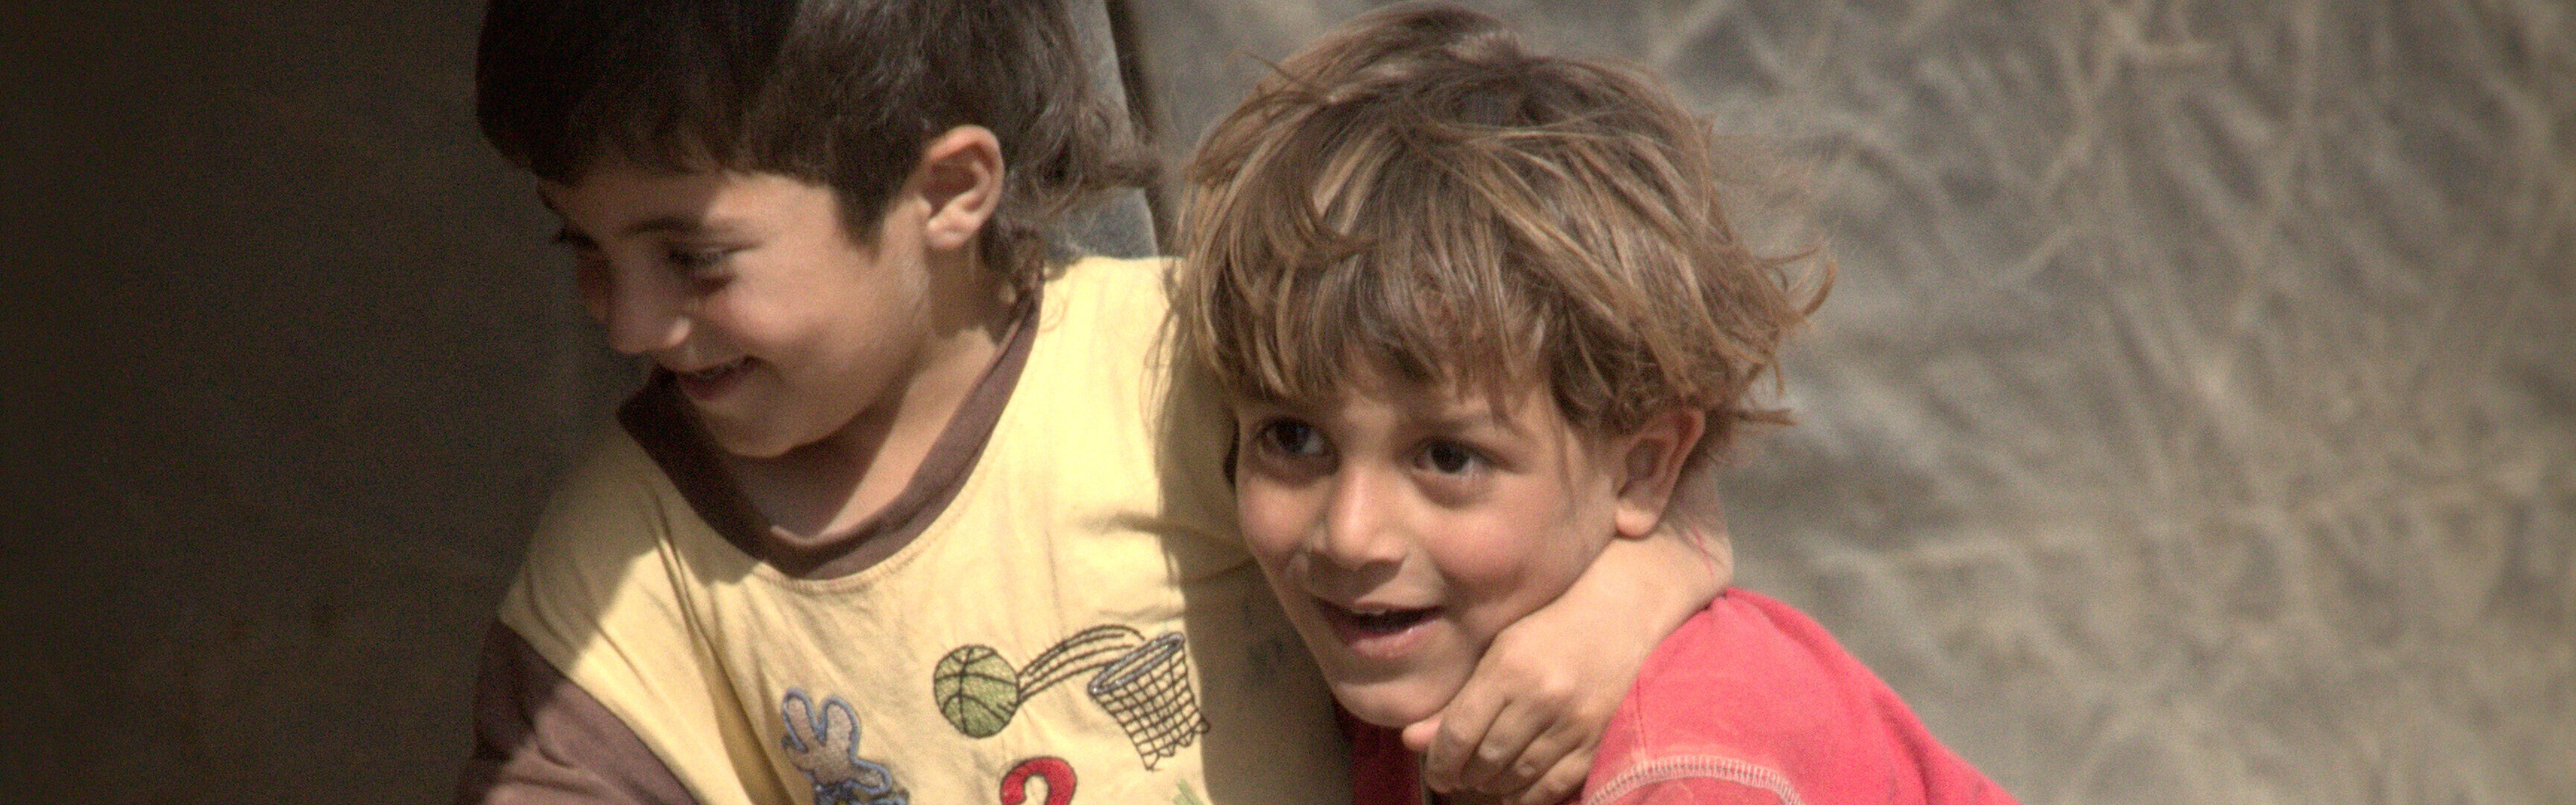 Zwei Jungen spielen in einem Flüchtlingslager.